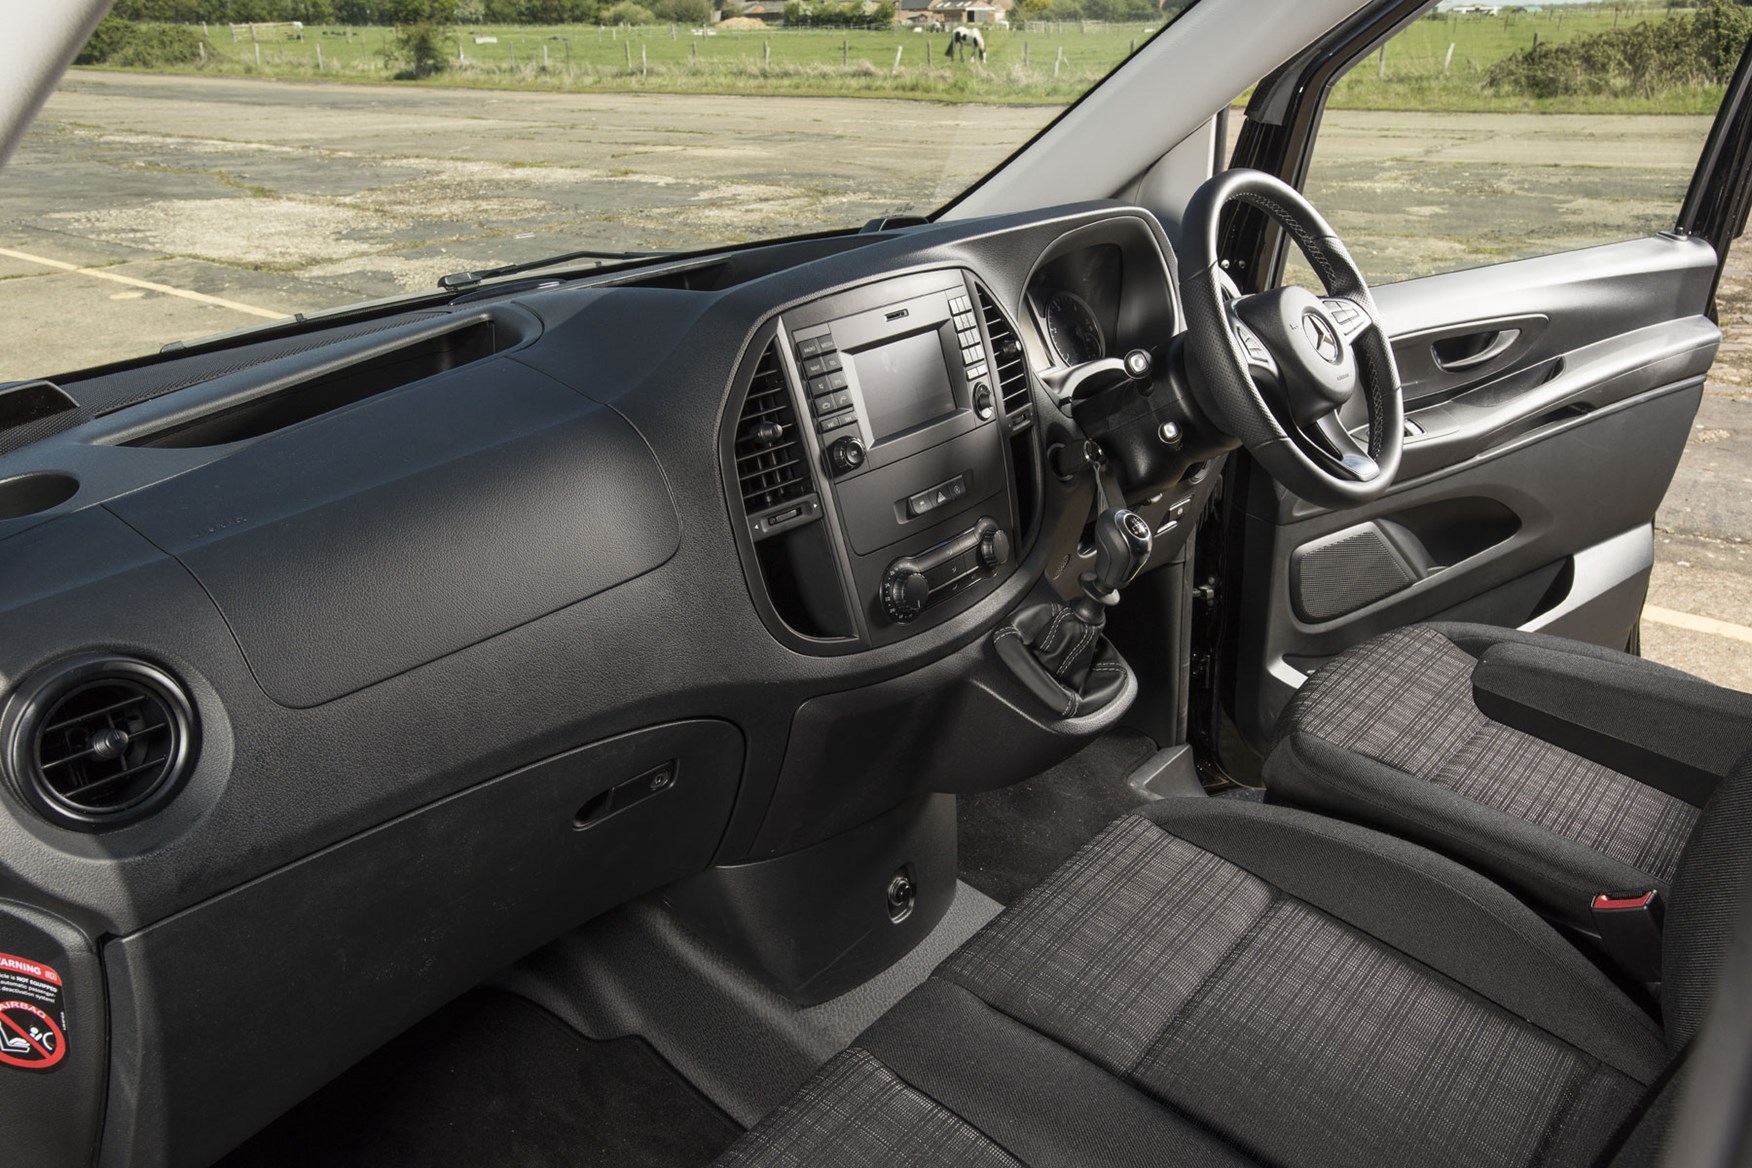 Mercedes Vito Premium review - cab interior